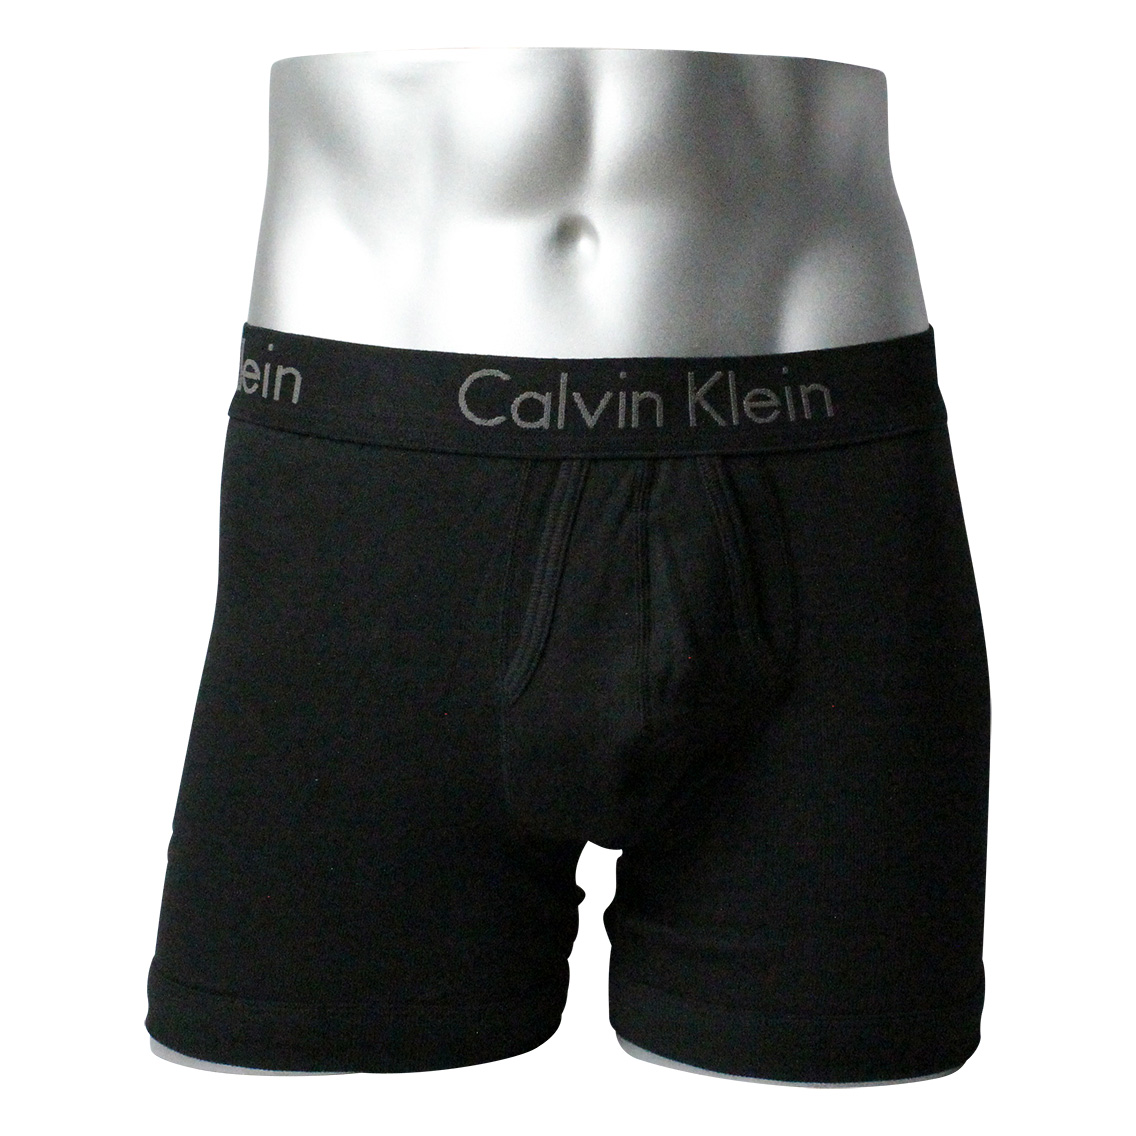 Calvin Klein (カルバンクライン)「nb1477-001」商品画像:ボクサーパンツ・男性下着の通販｜ルカノール